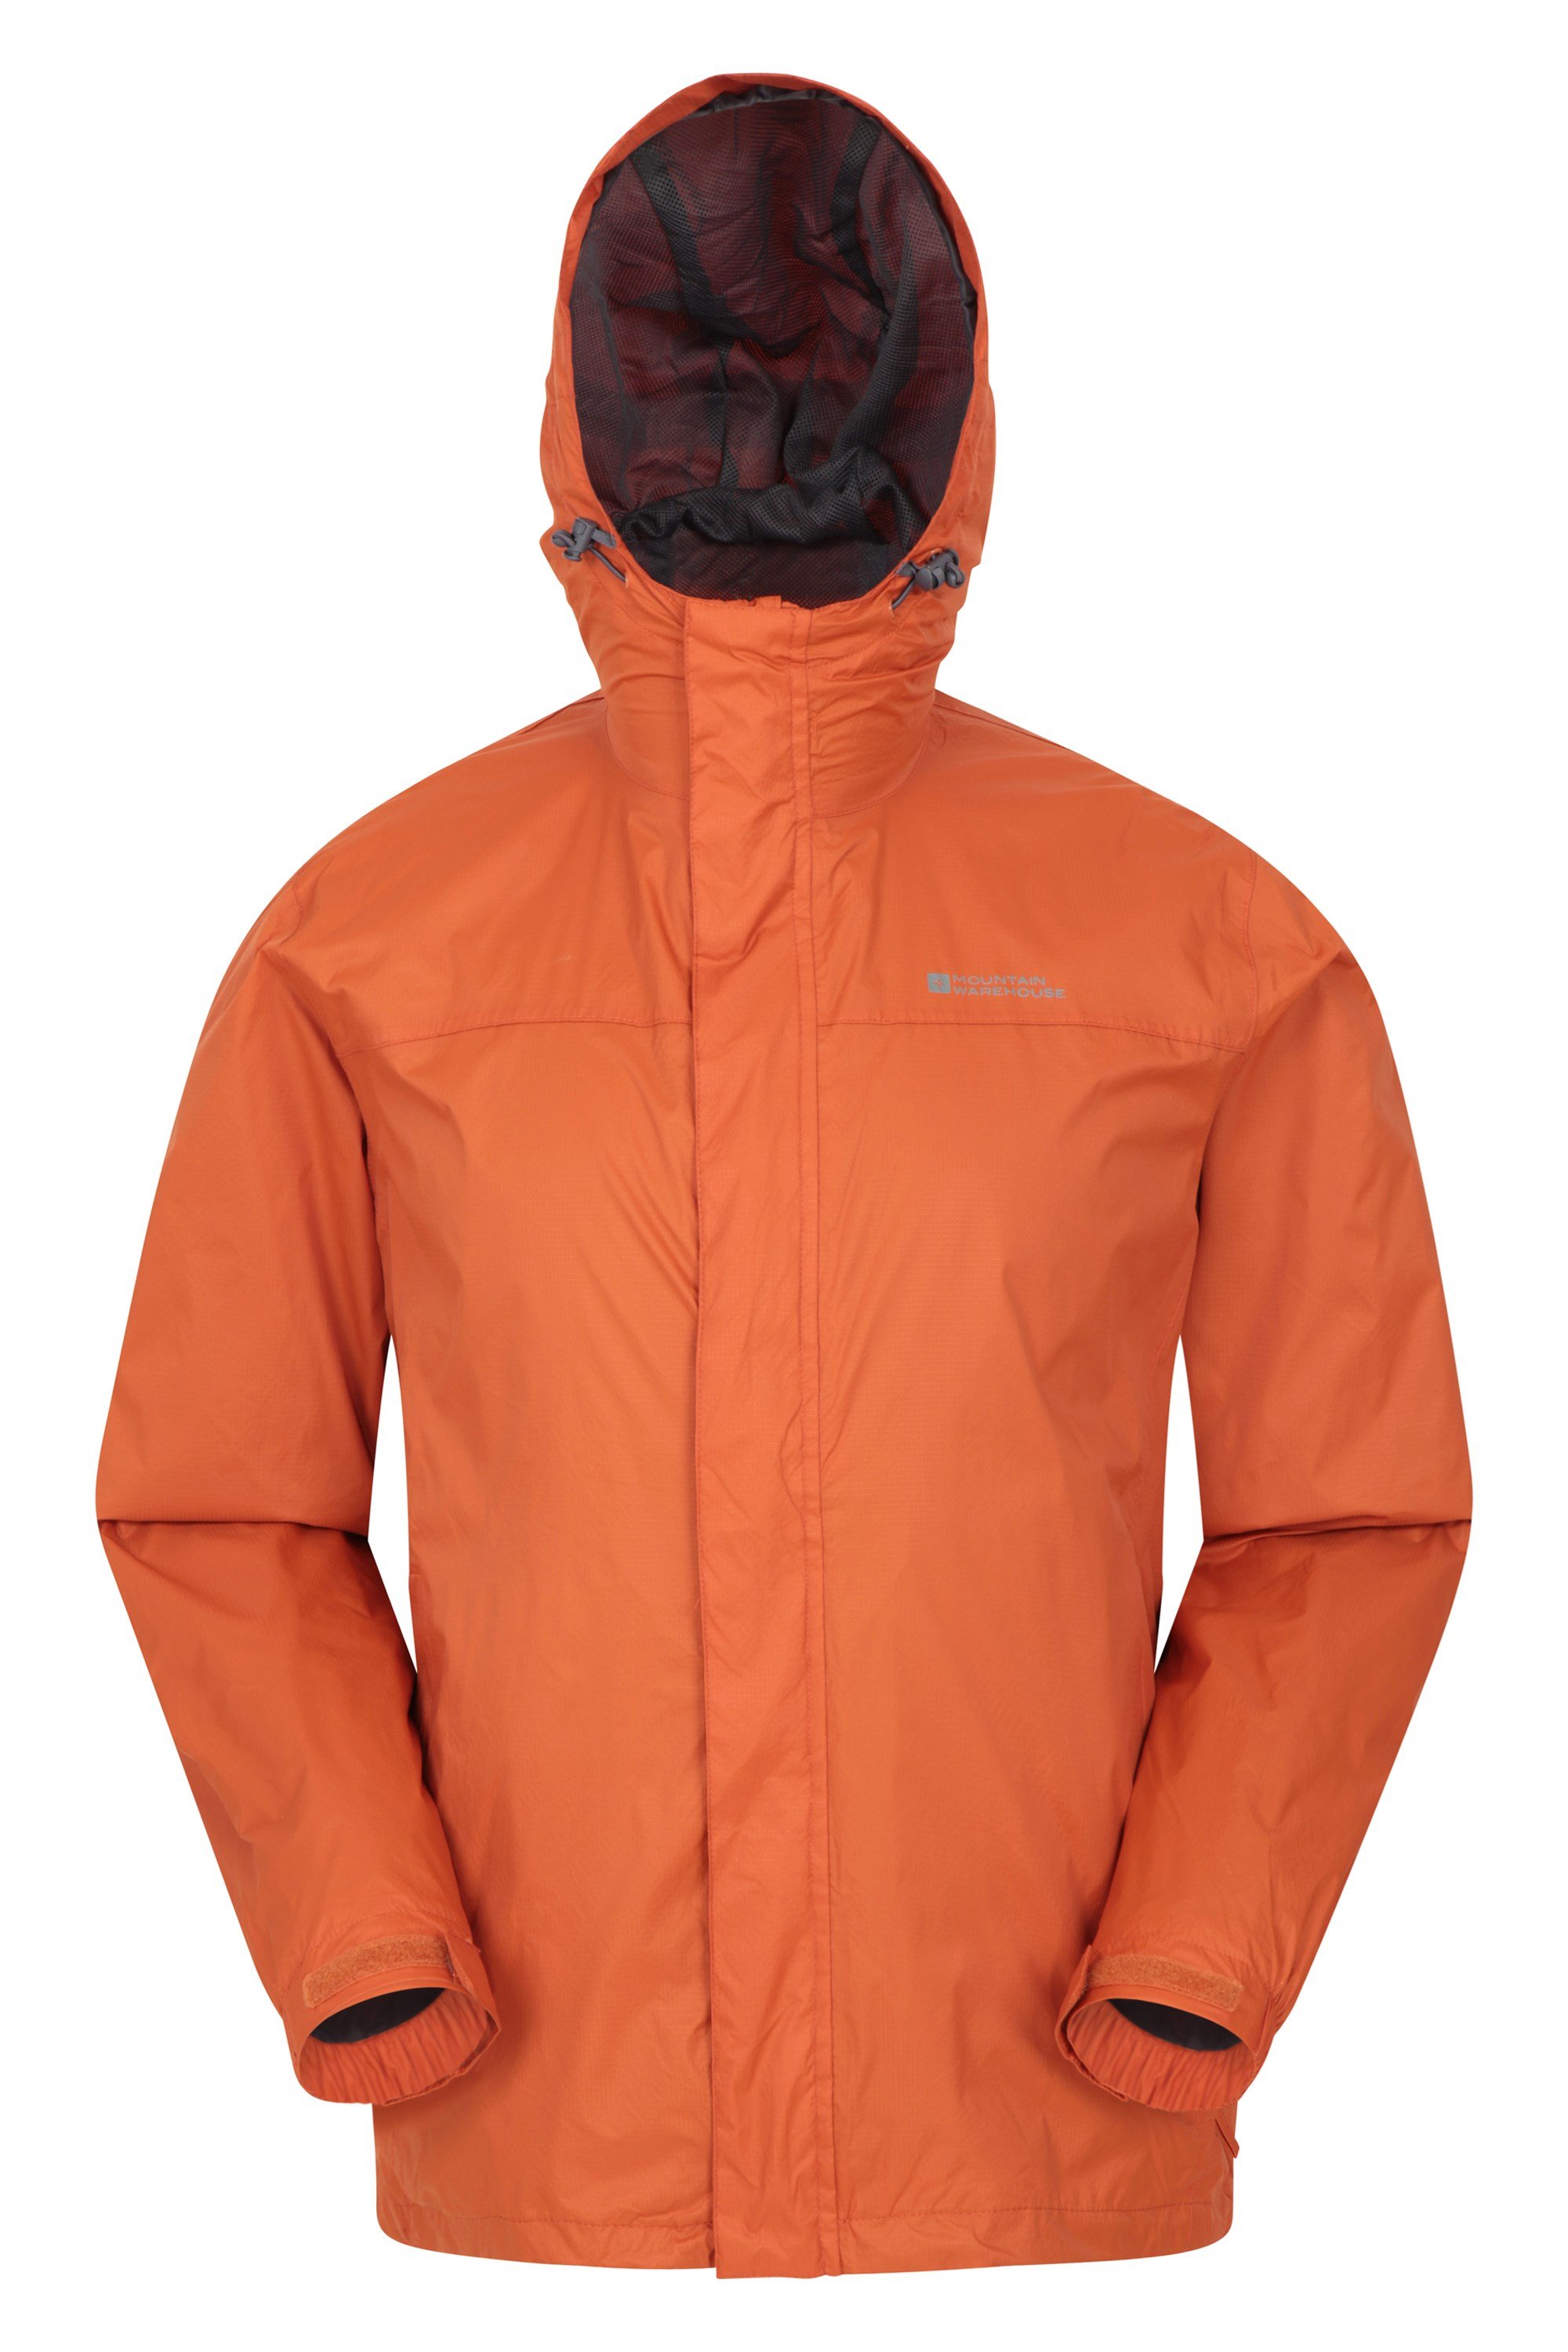 Mountain Warehouse Mens Waterproof Jacket Coat Cagoule Hood Breathable 